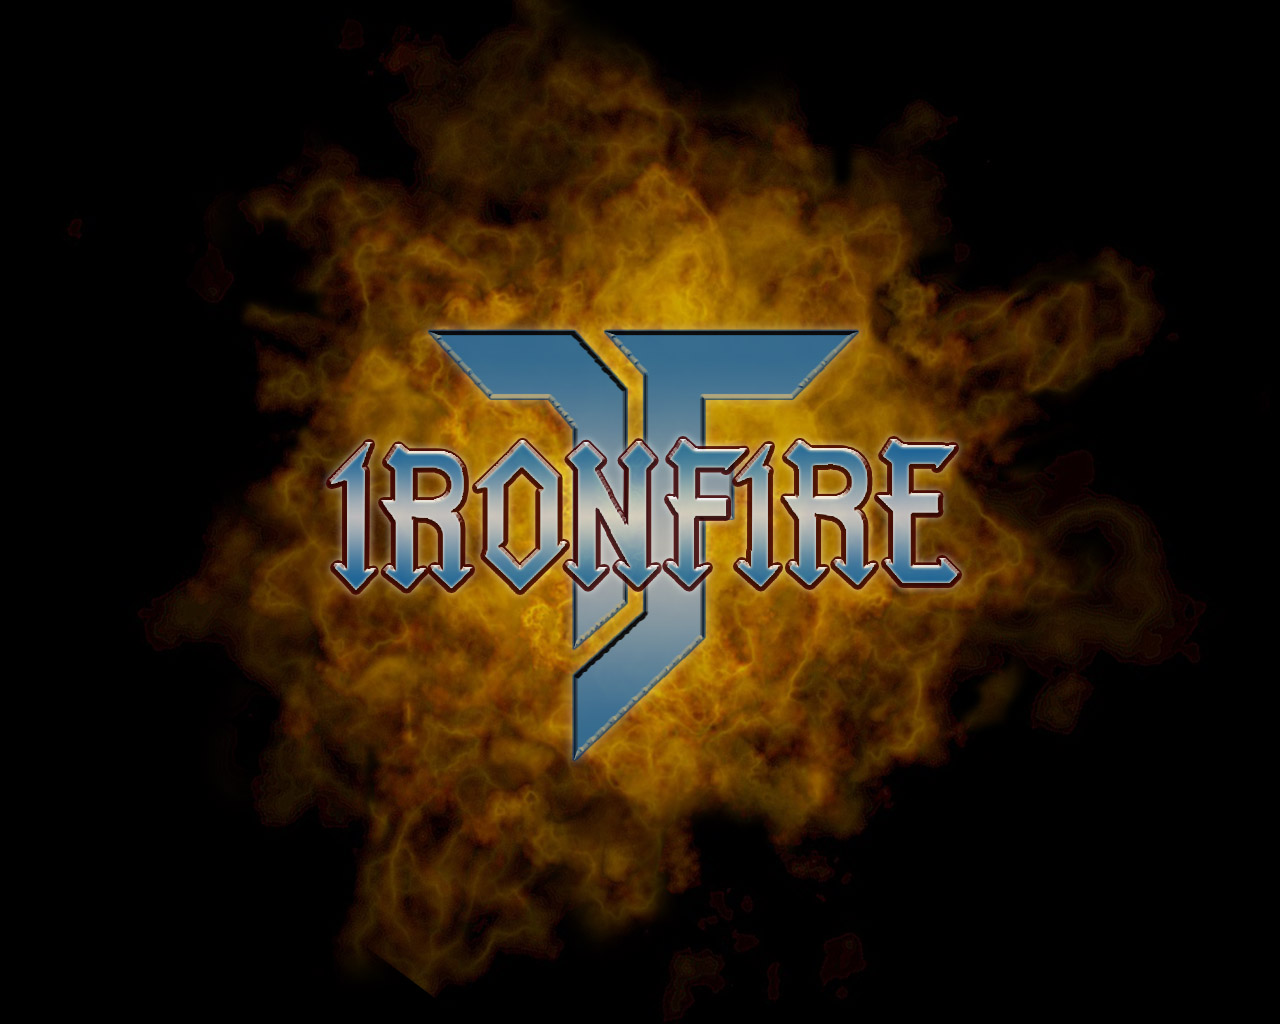 Iron_Fire_02_1280x1024.jpg